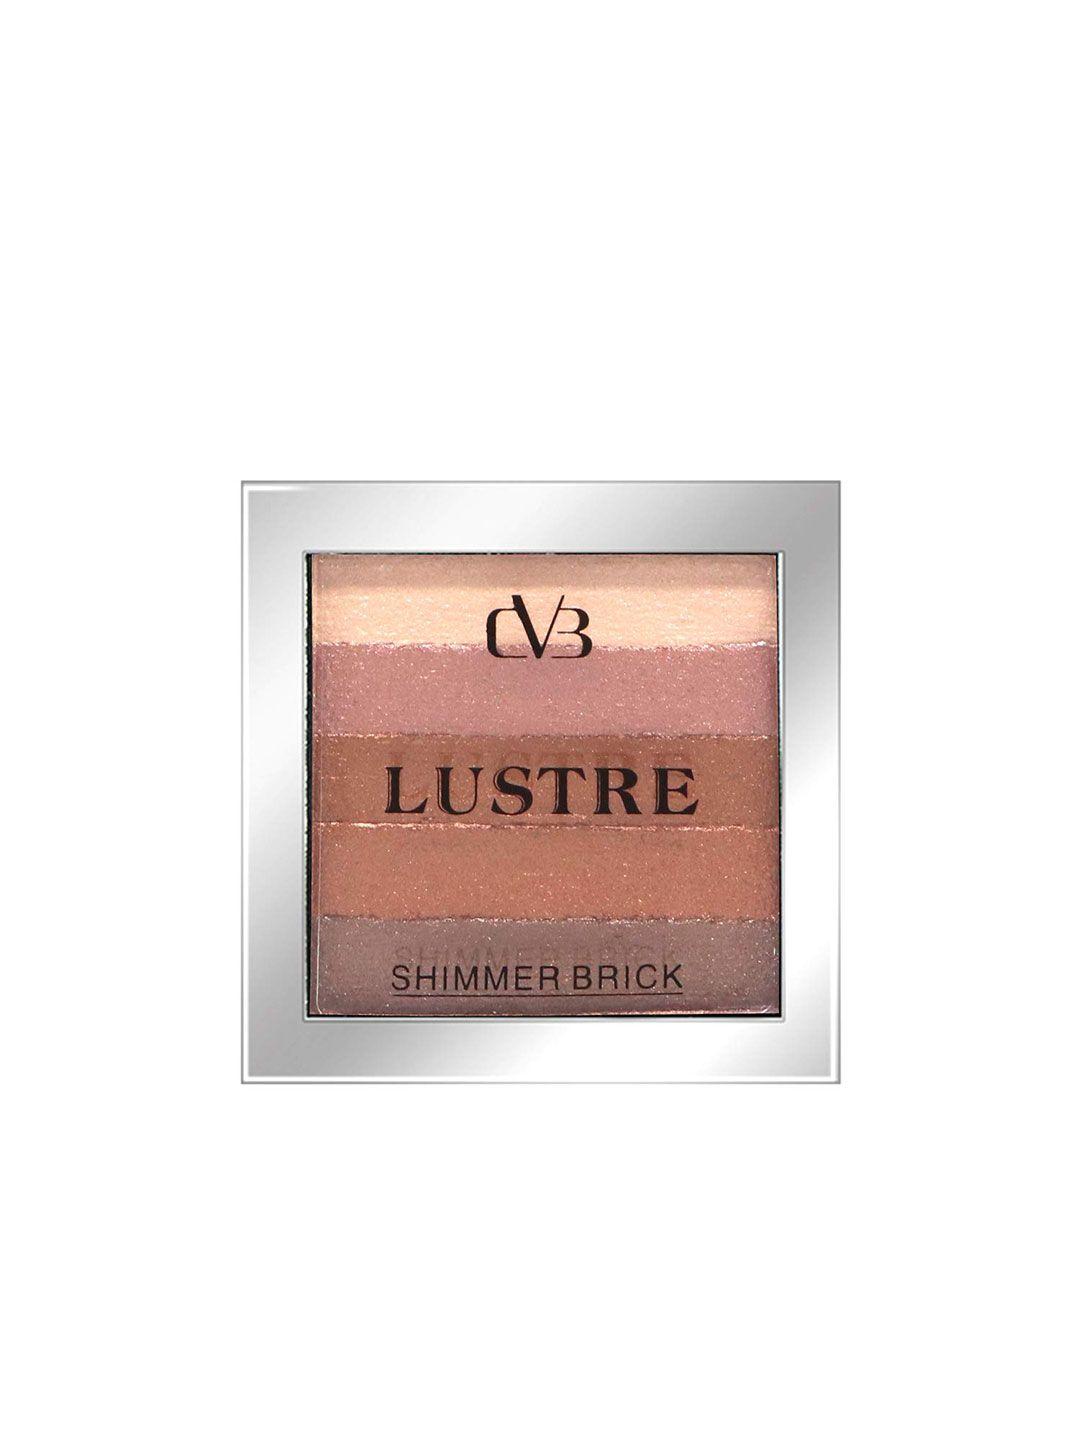 cvb lustre shimmer brick blush - shade c35-04